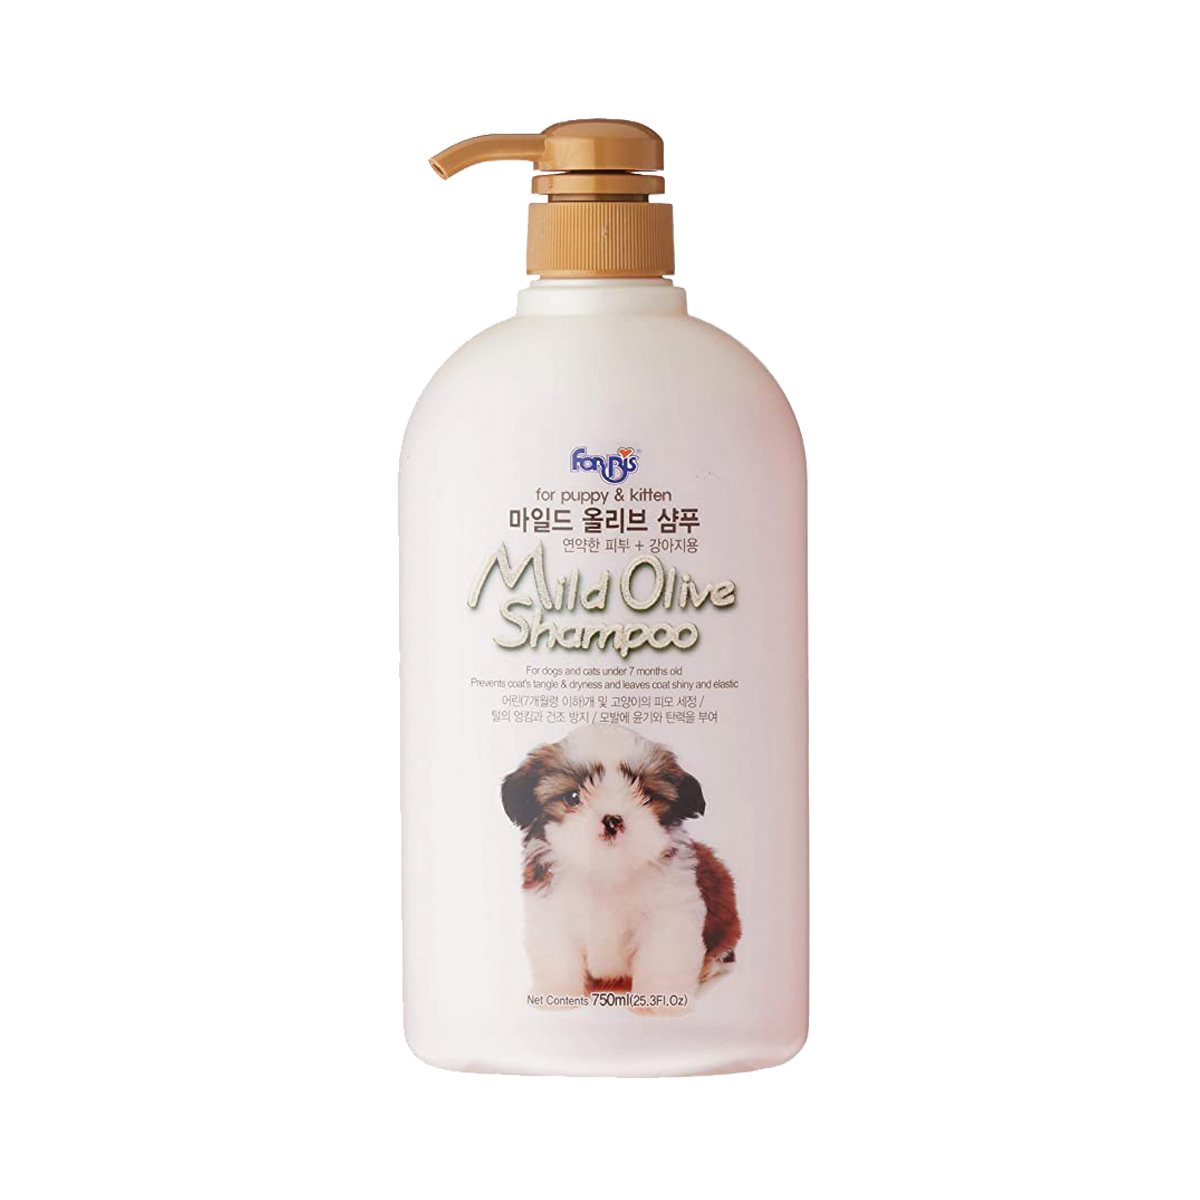 Forbis Mild Olive Shampoo ฟอร์บิส แชมพู สูตรน้ำมันมะกอก สำหรับลูกสุนัขและลูกแมว ขนาด 750 มล.